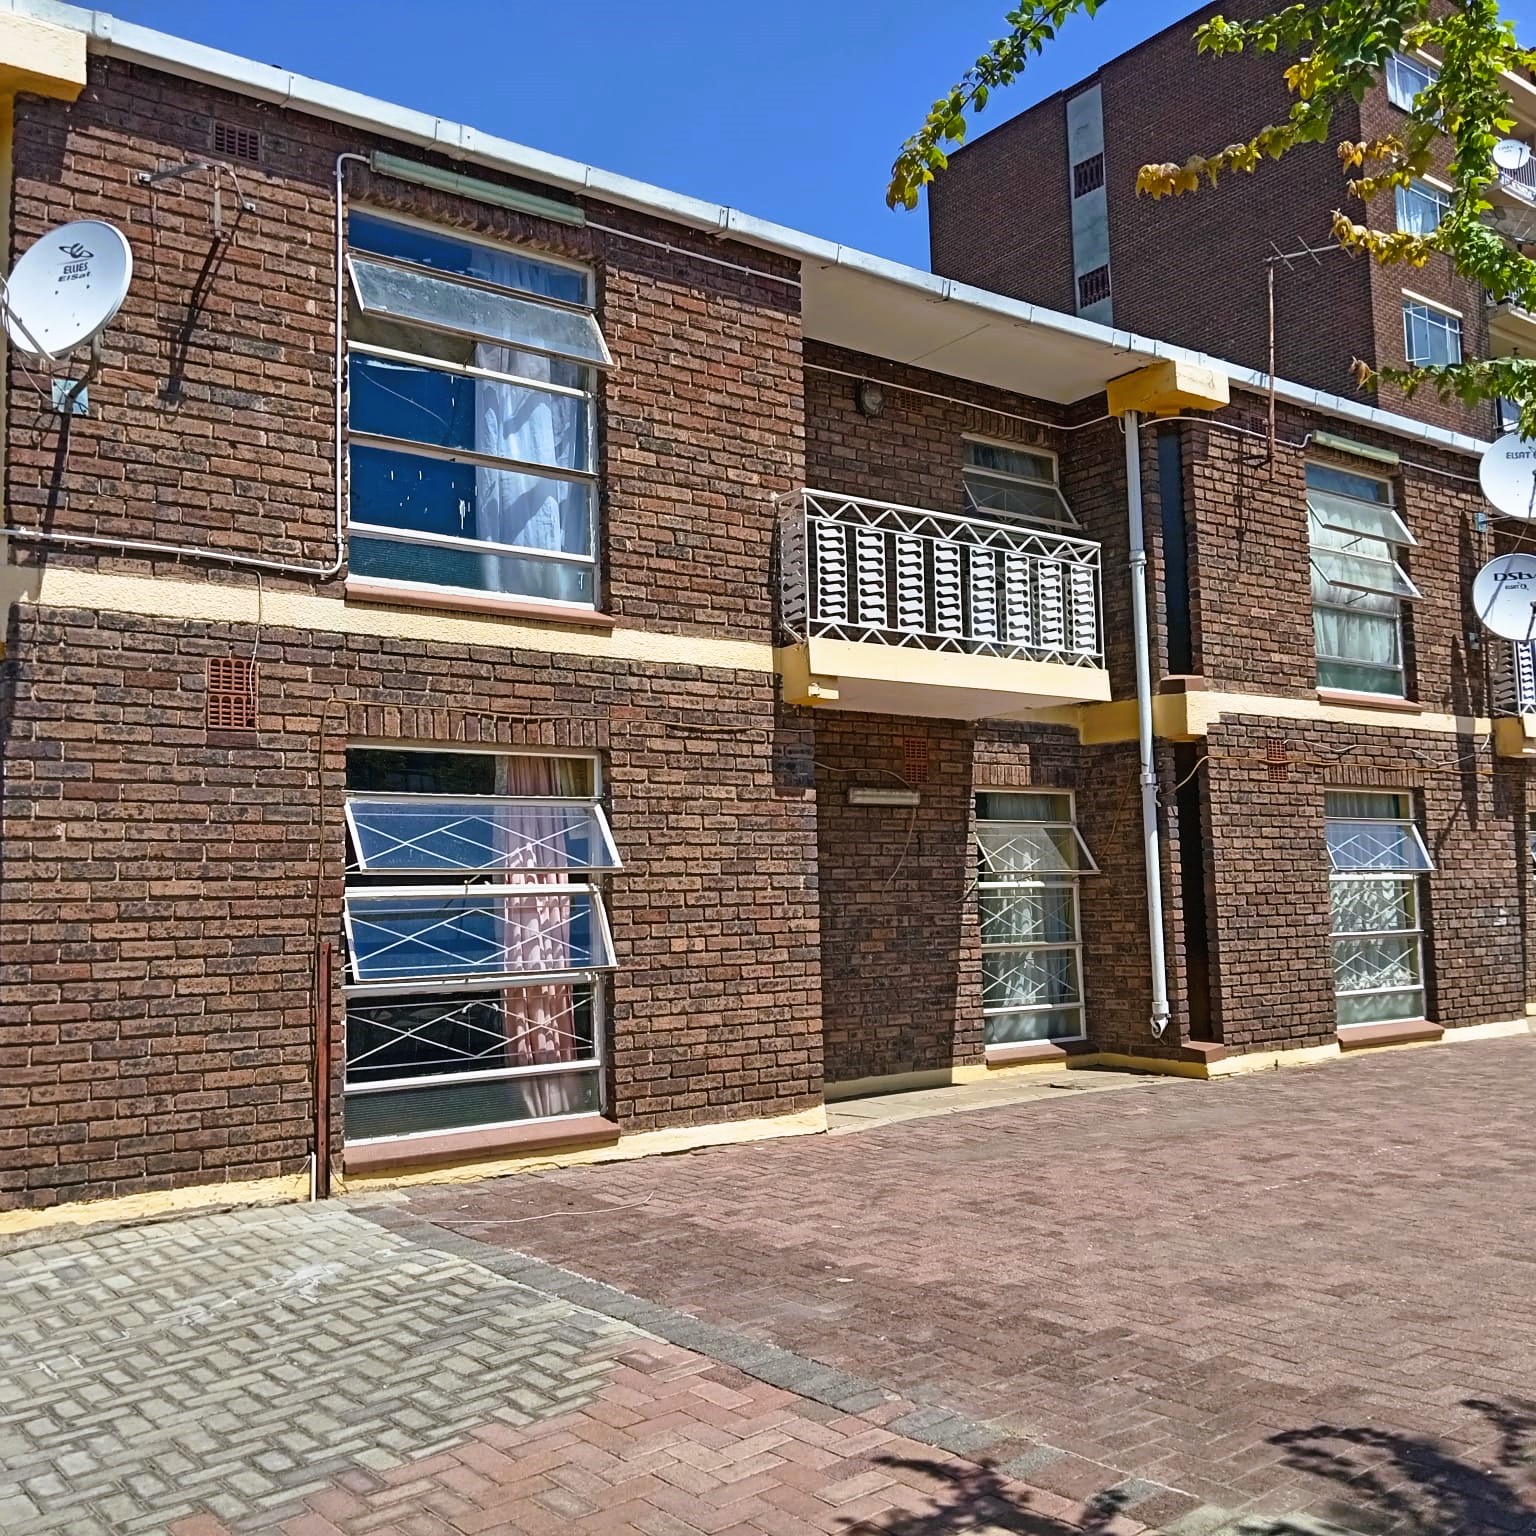 12 Bedroom Property for Sale in Vereeniging Gauteng